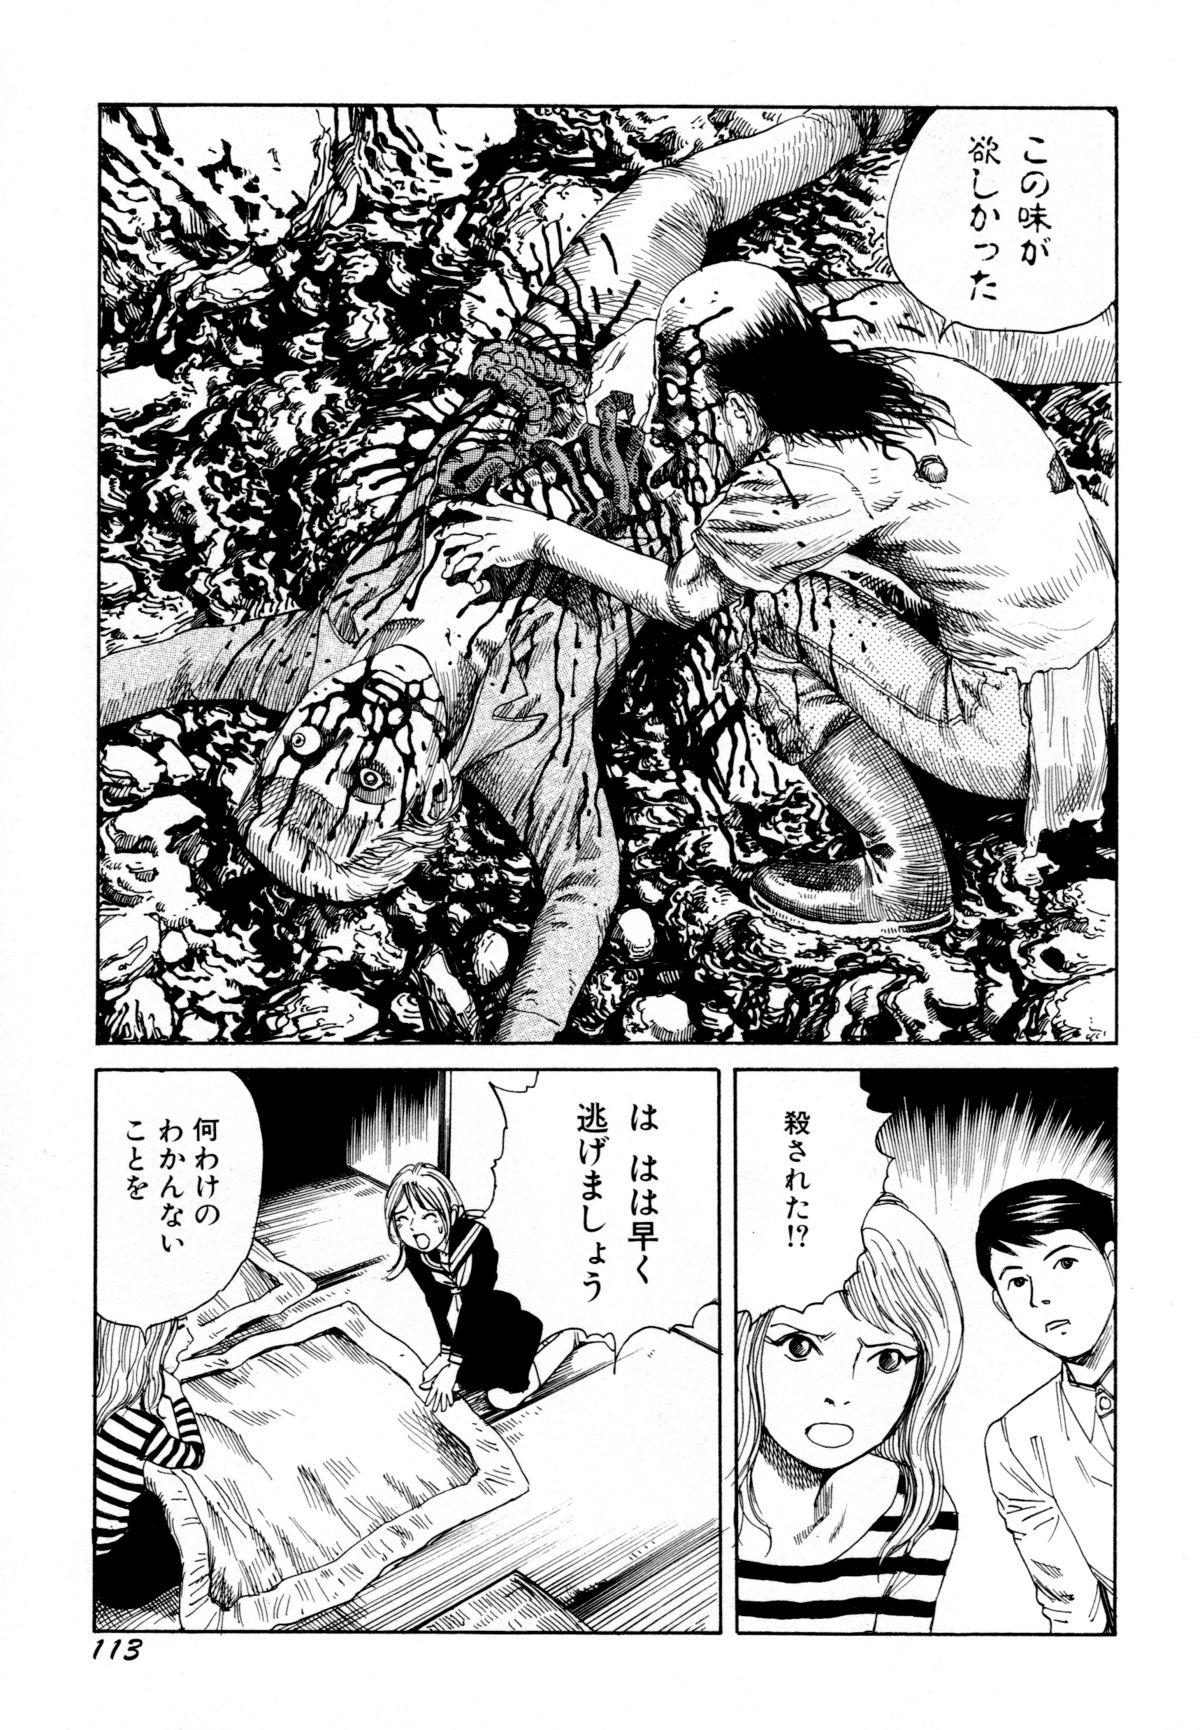 Arijigoku vs Barabara Shoujo - Antlion vs BaraBara Girl 115